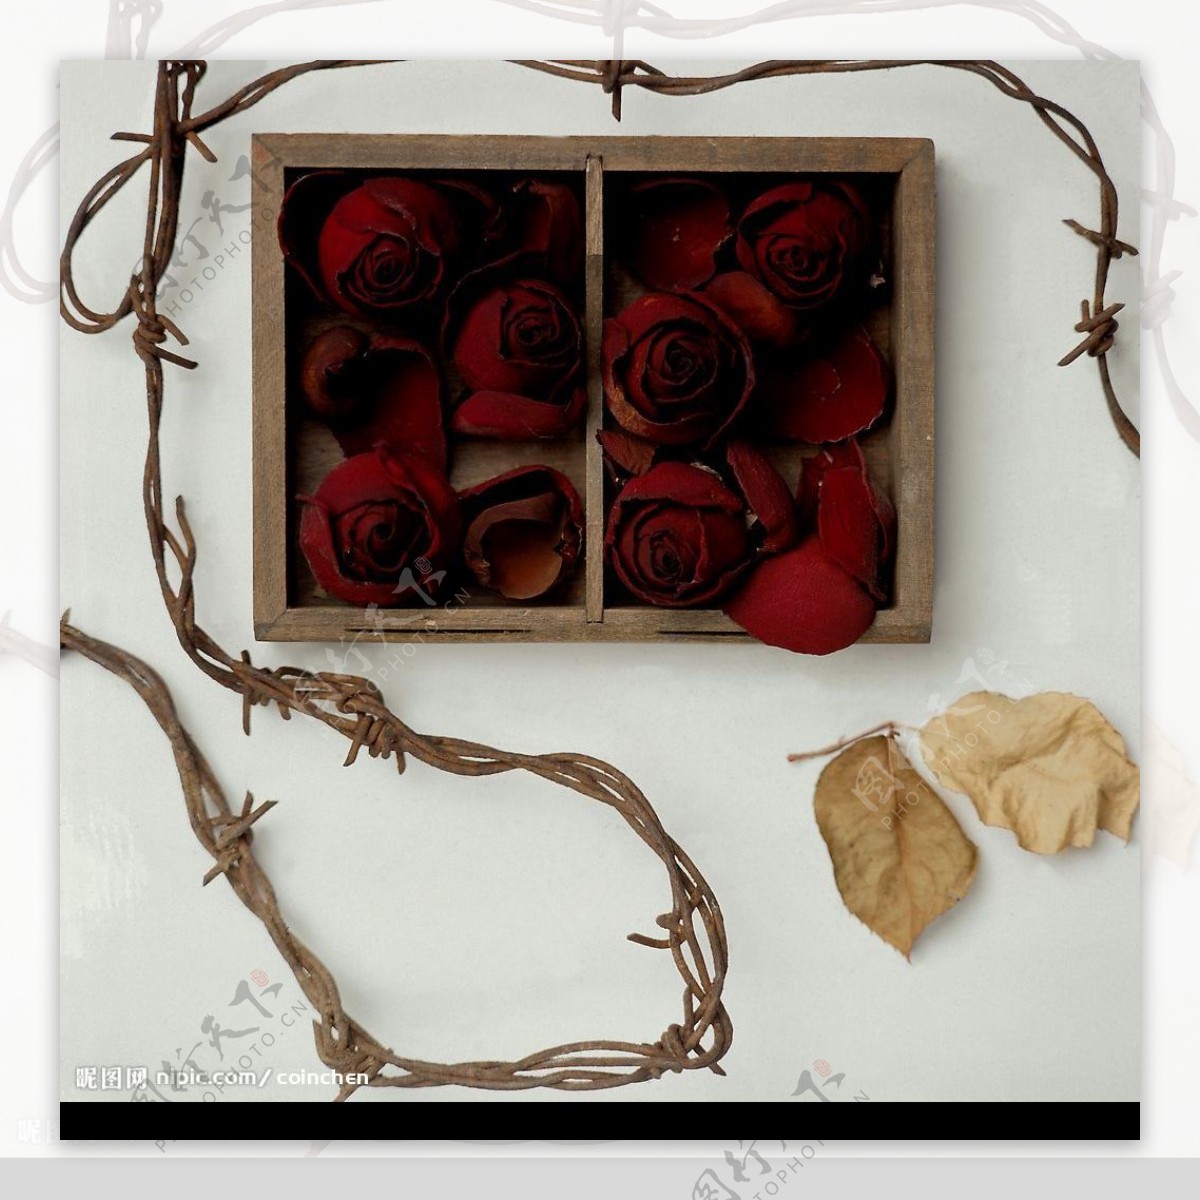 玫瑰草绳以及枯叶的美景图片